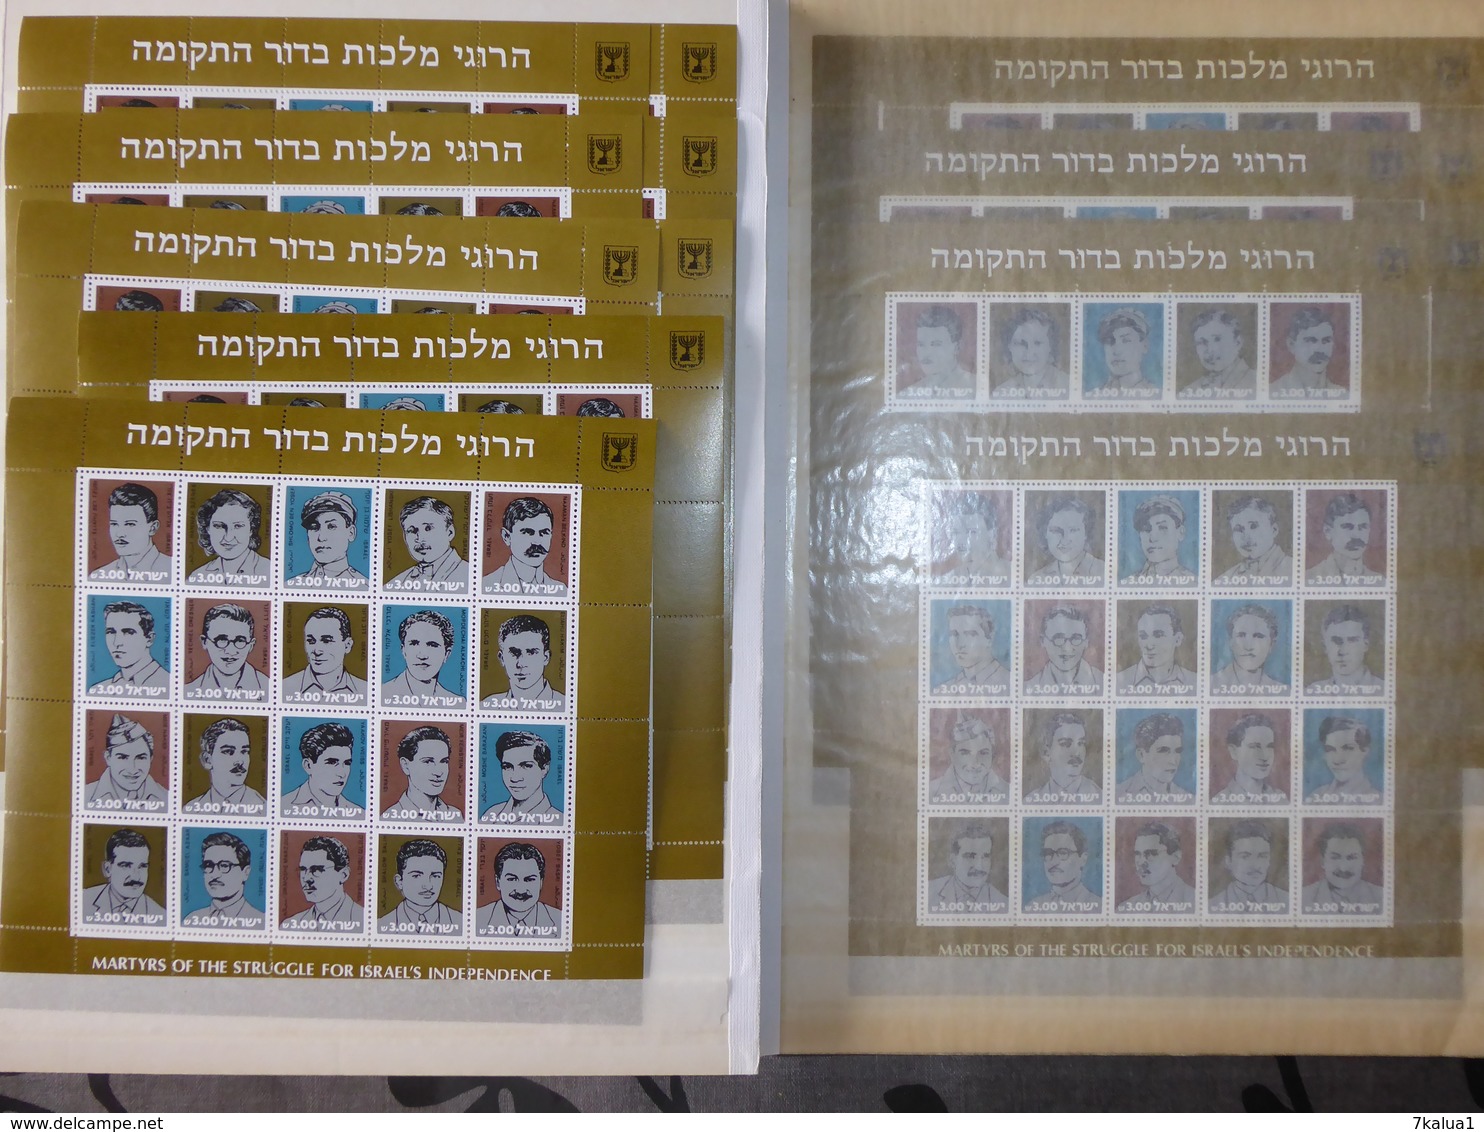 ISRAEL : Lot de blocs neufs ** par multiples. Période années 70 / 80. 13 pages.